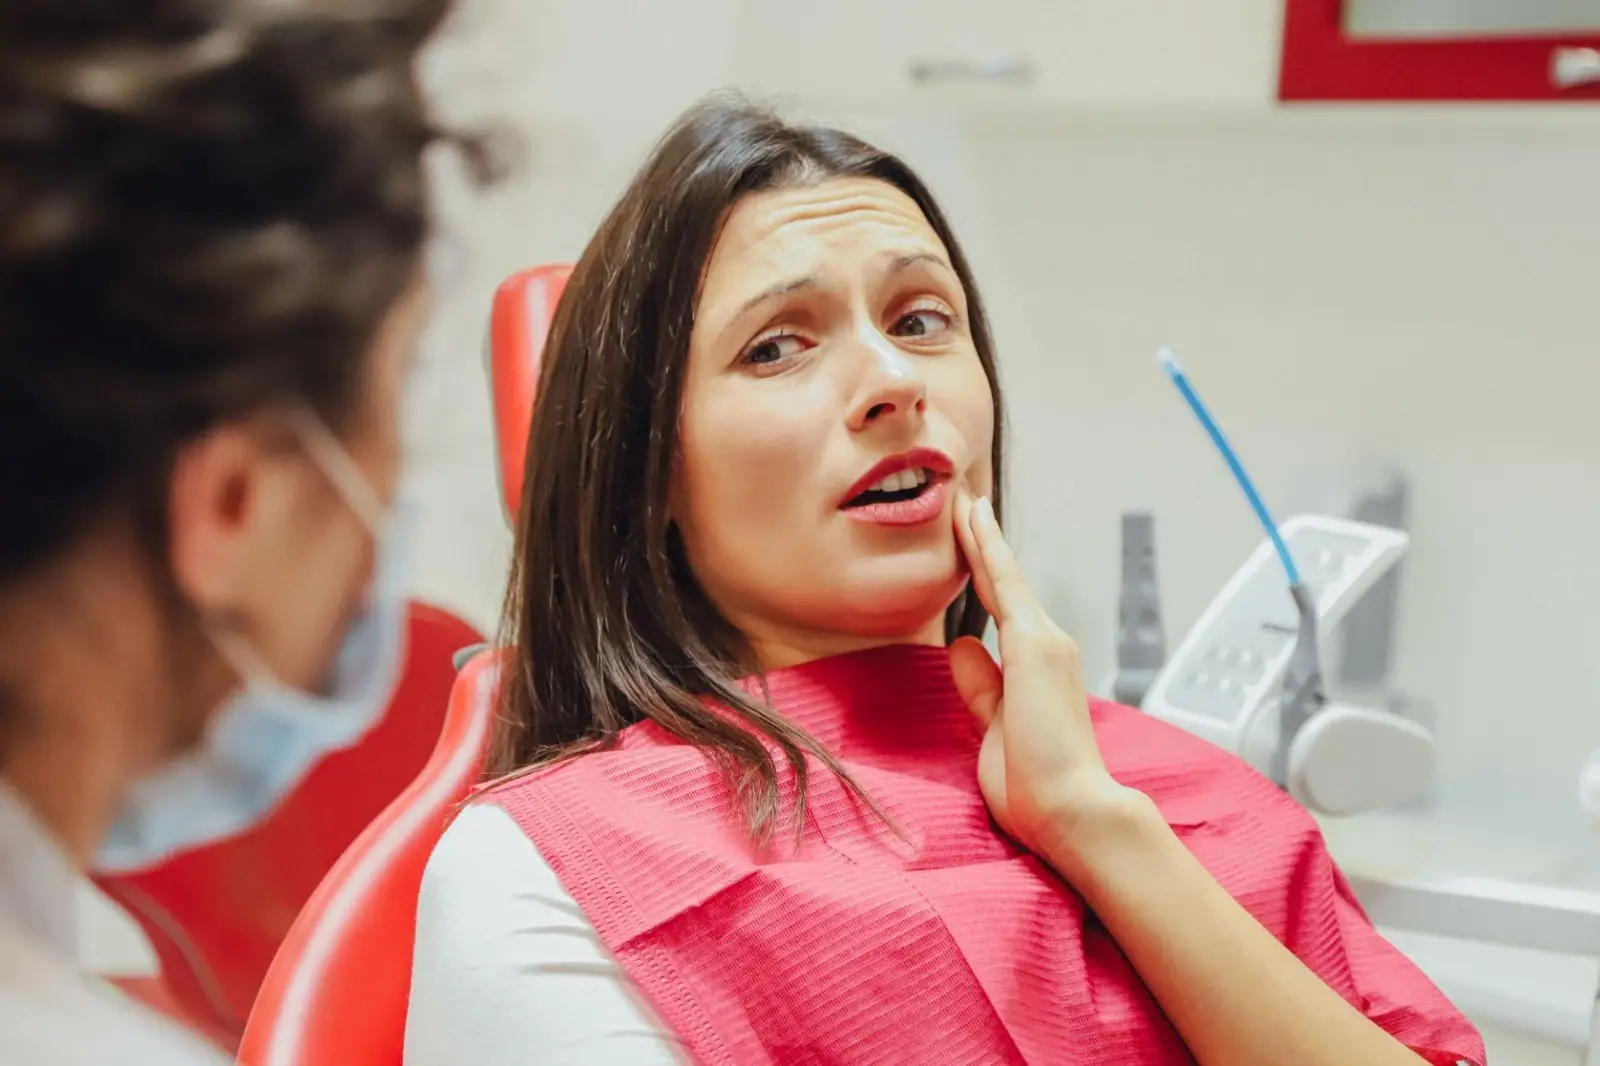 ما هي طرق علاج عصب الأسنان؟وكيف يمكن تجنبه؟